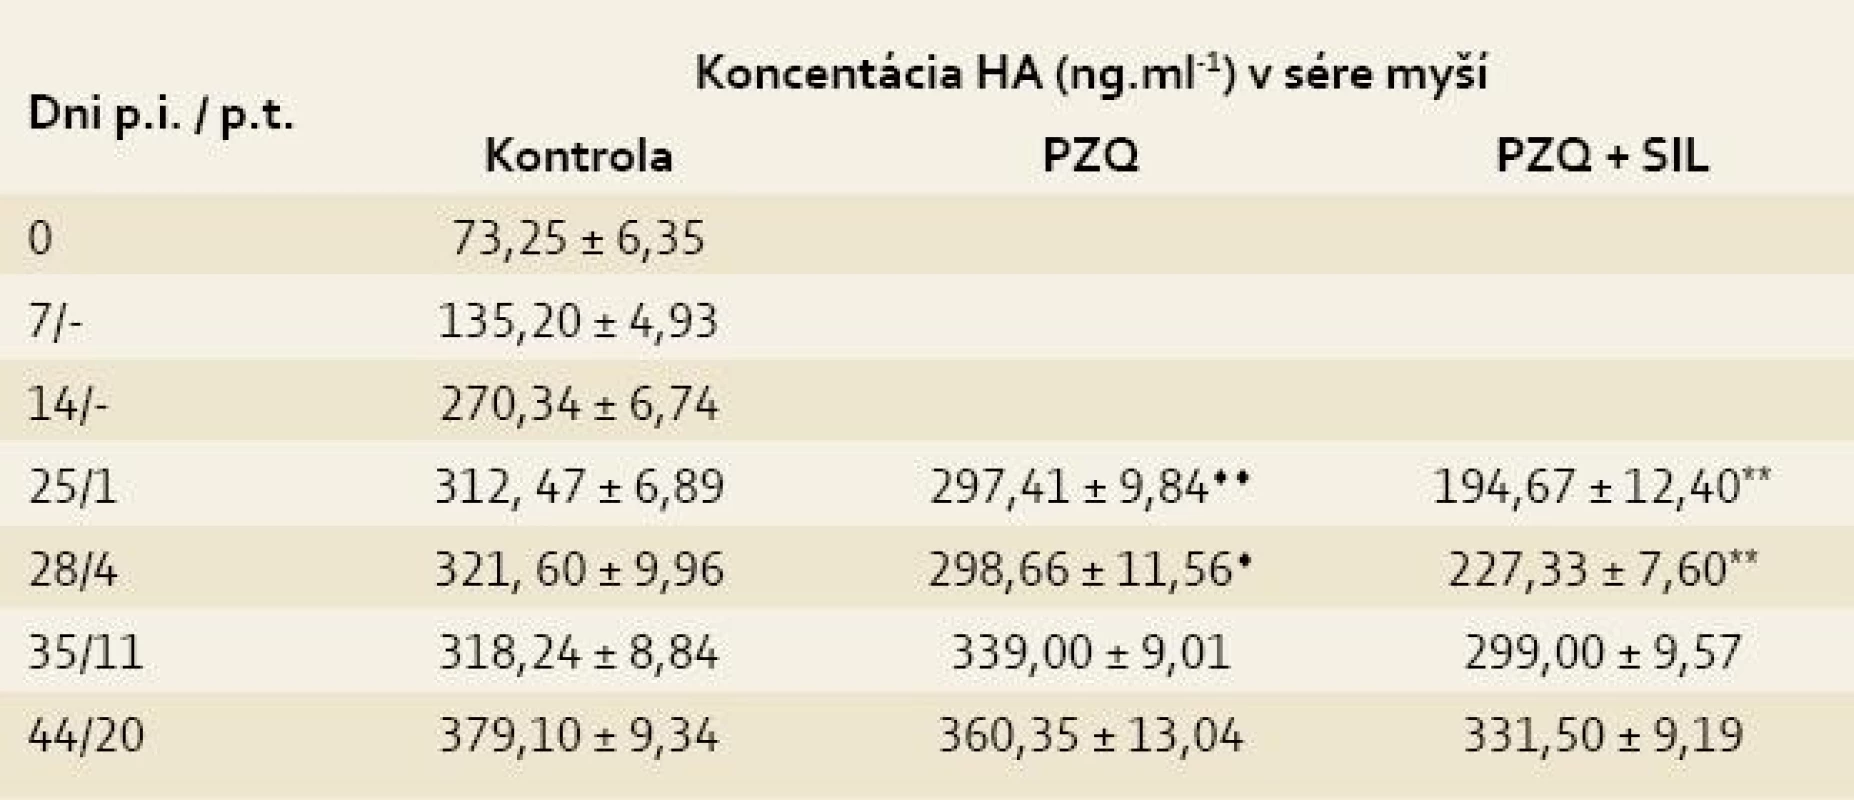 Koncentrácia kyseliny hyalurónovej (HA) v sérach myší infikovaných larvami <i>Mesocestoides vogae</i>, neliečených a liečených praziquantelom (PZQ) samotným alebo v kombinácii so silymarínom (SIL).<br>
Tab. 3. Concentration of hyaluronic acid (HA) in the sera of mice infected with <i>Mesocestoides vogae</i> larvae, untreated and treated with praziquantel (PZQ) alone and in combination with silymarin (SIL).